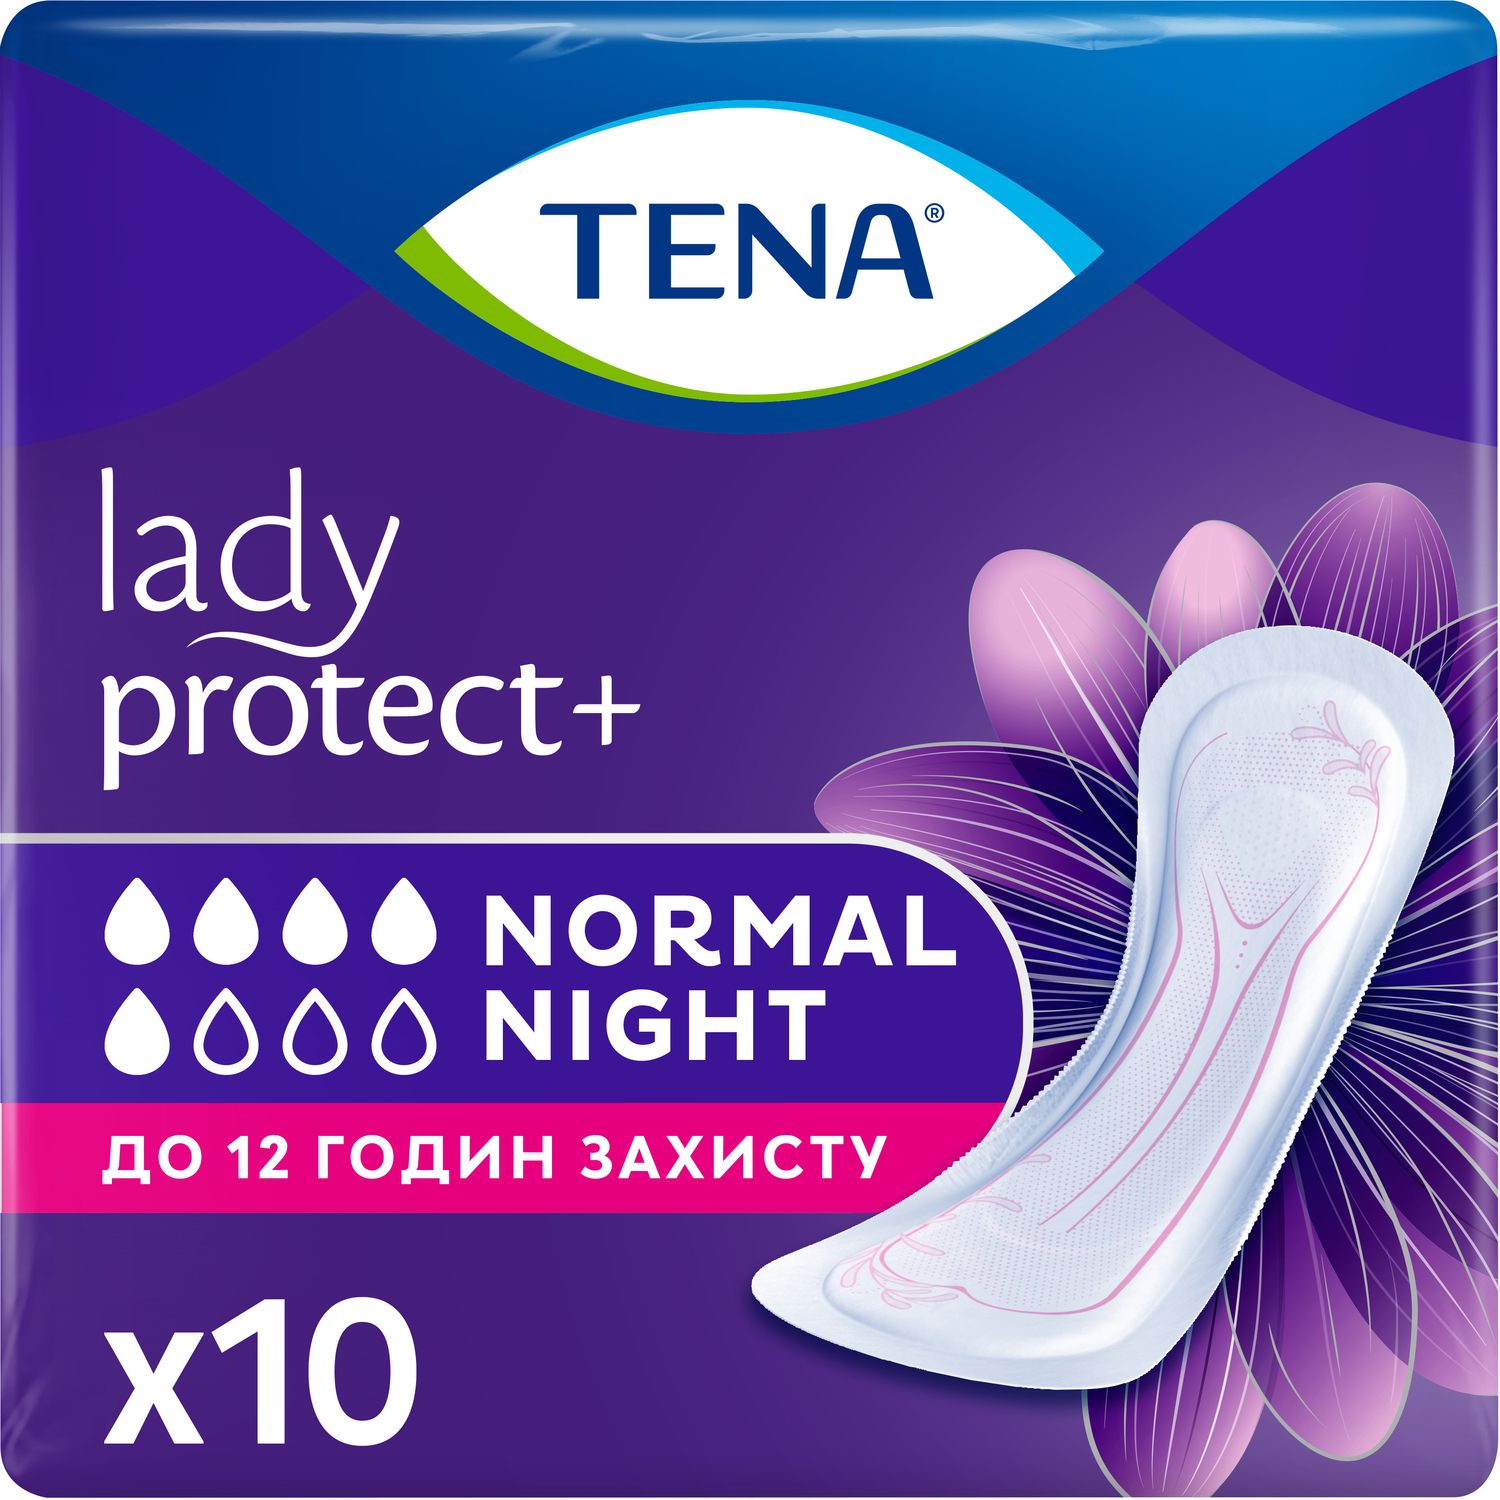 Ночные урологические прокладки Tena Lady Protect Normal Night 5 капель 10 шт. - фото 1